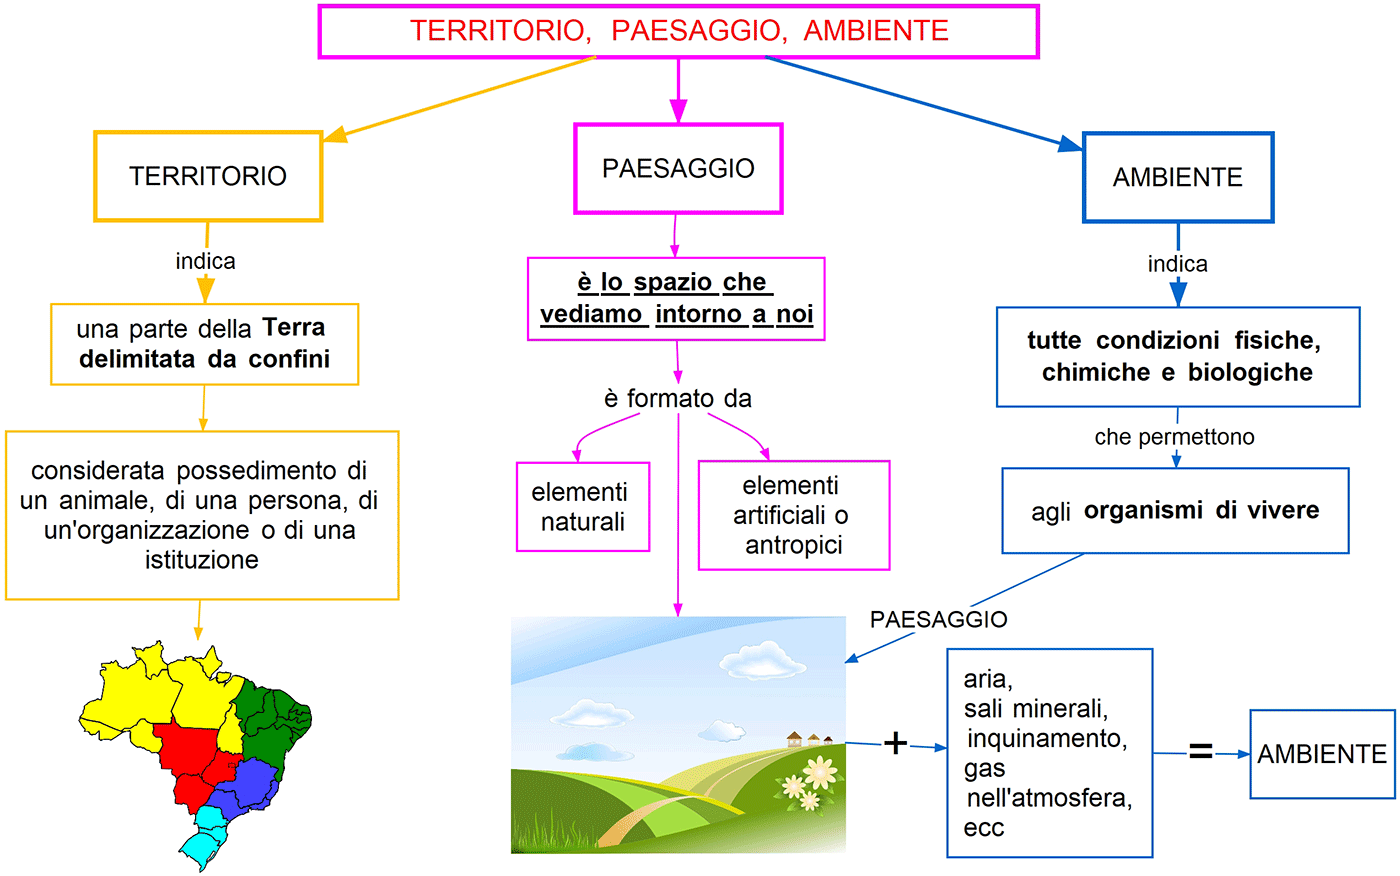 TERRITORIO, PAESAGGIO, AMBIENTE